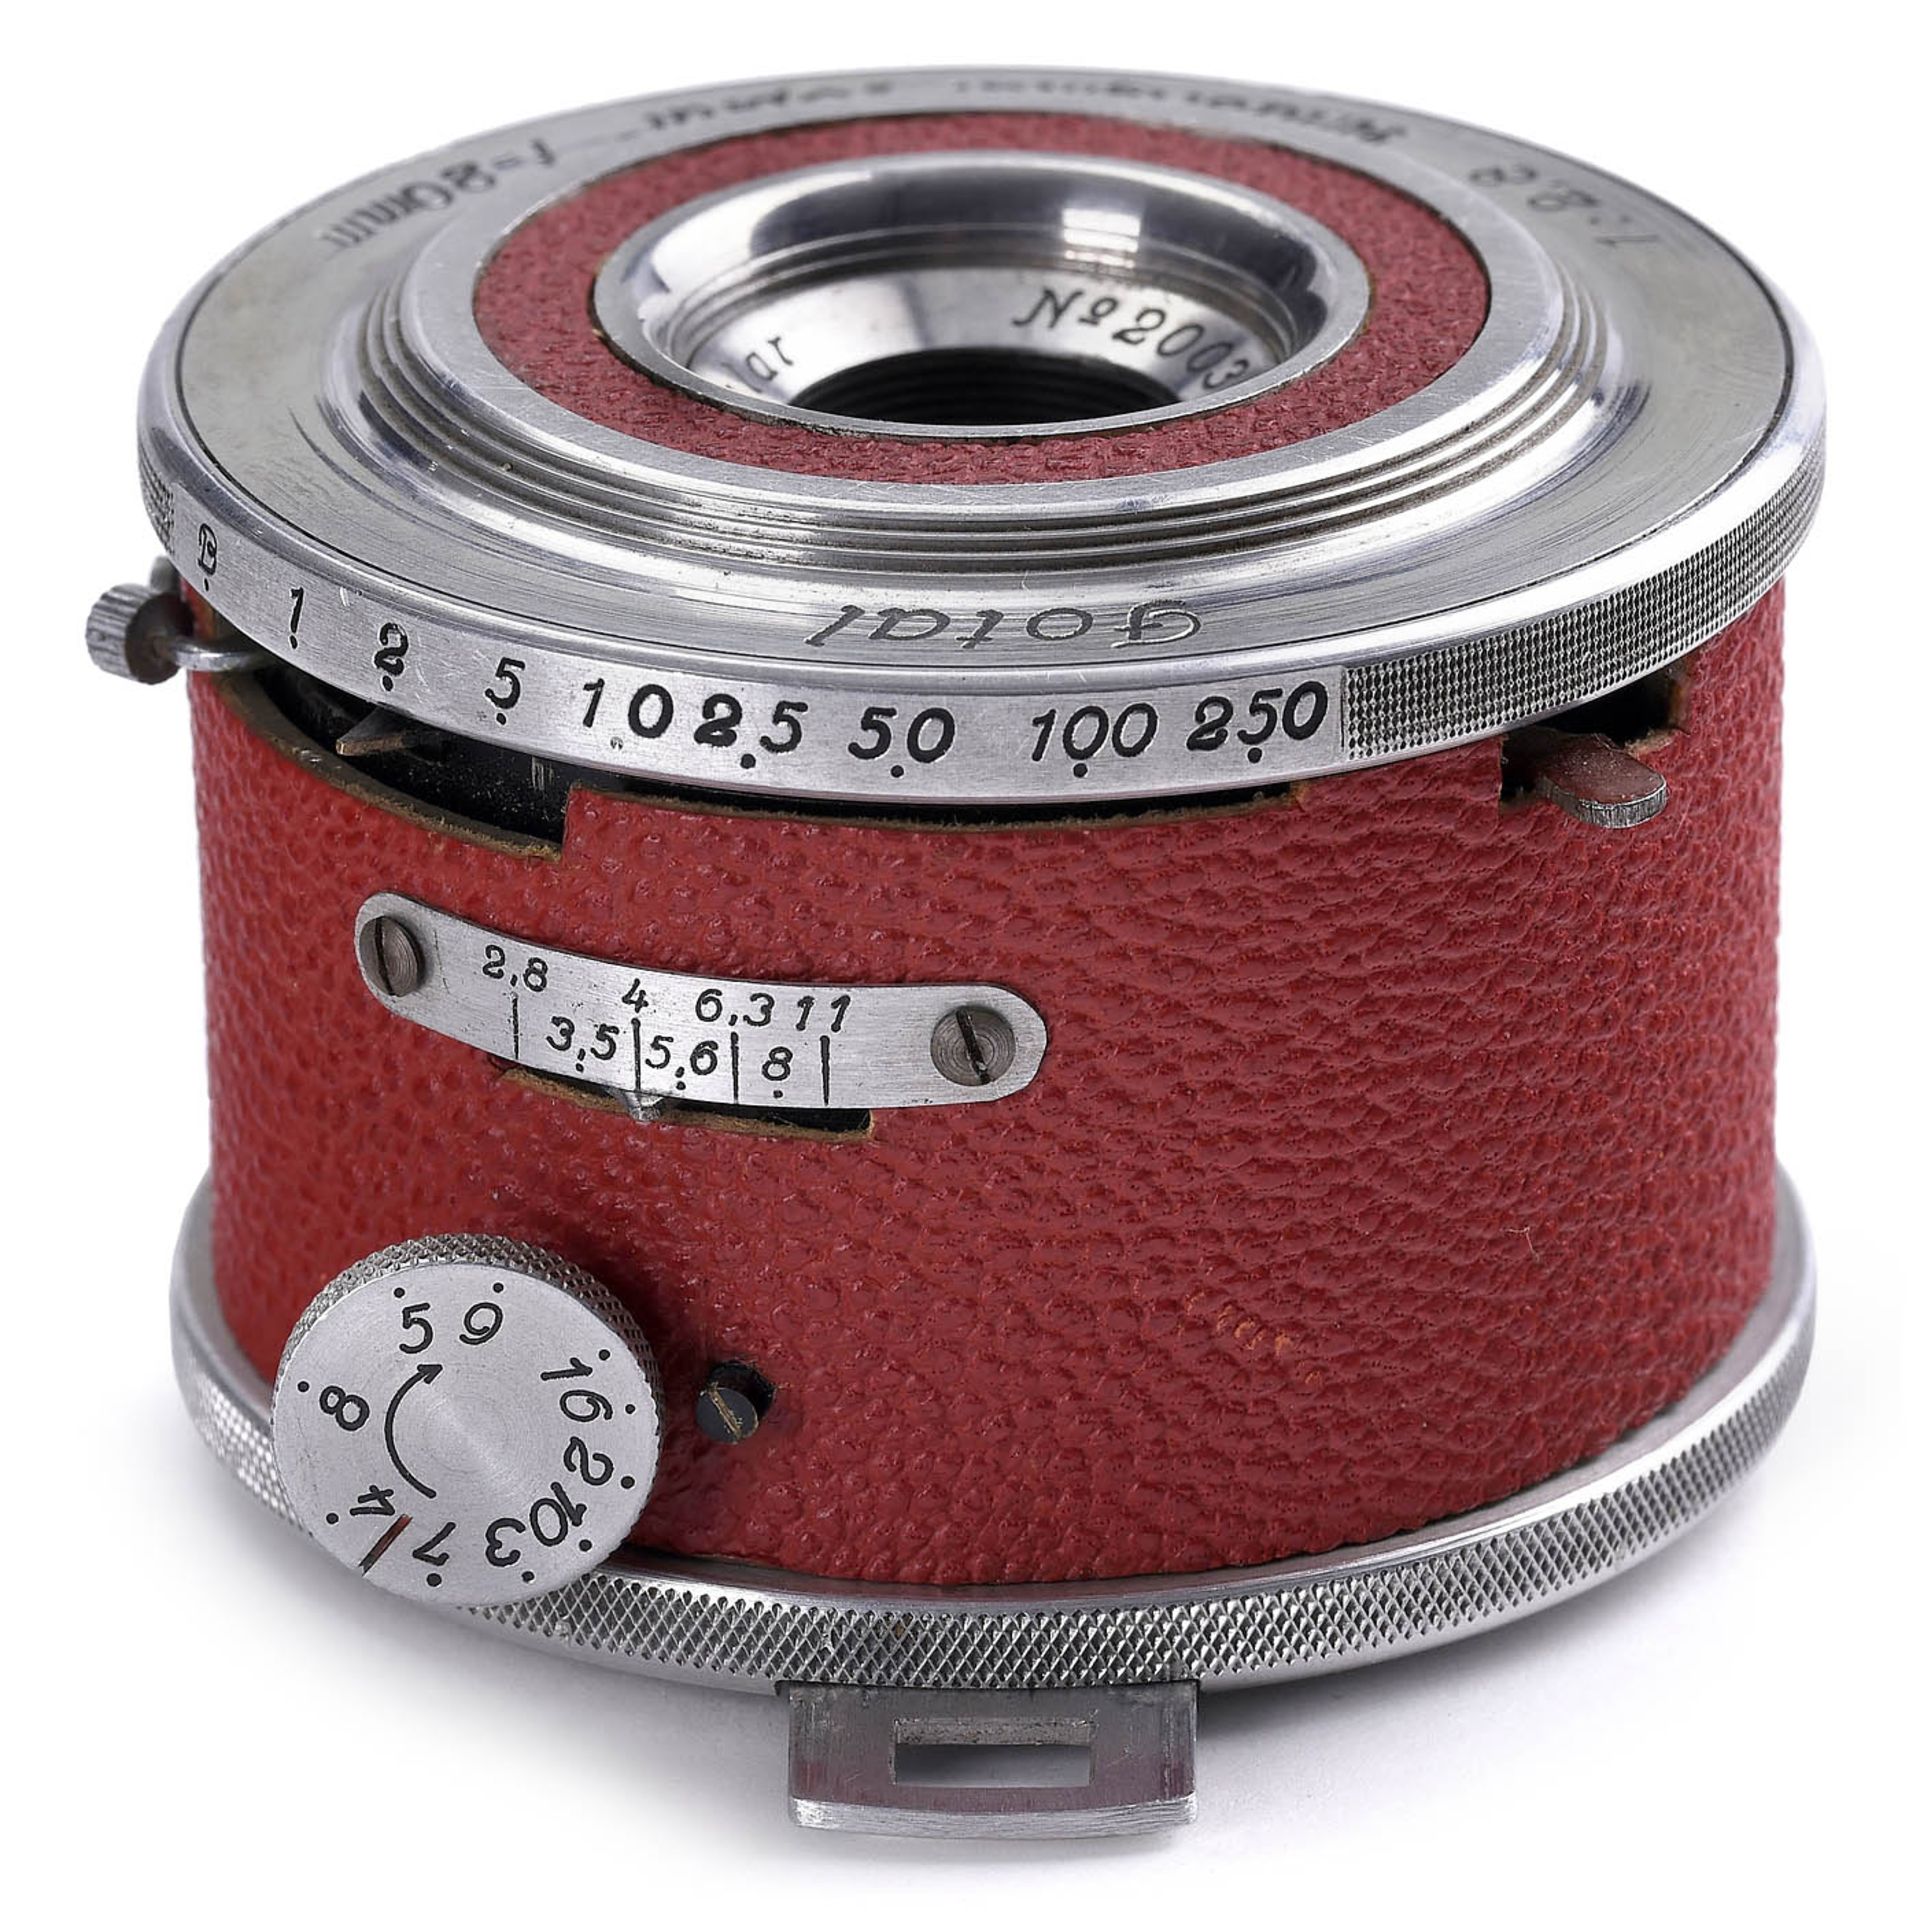 Fotal (Red) Miniature Camera, c. 1955 - Bild 3 aus 5